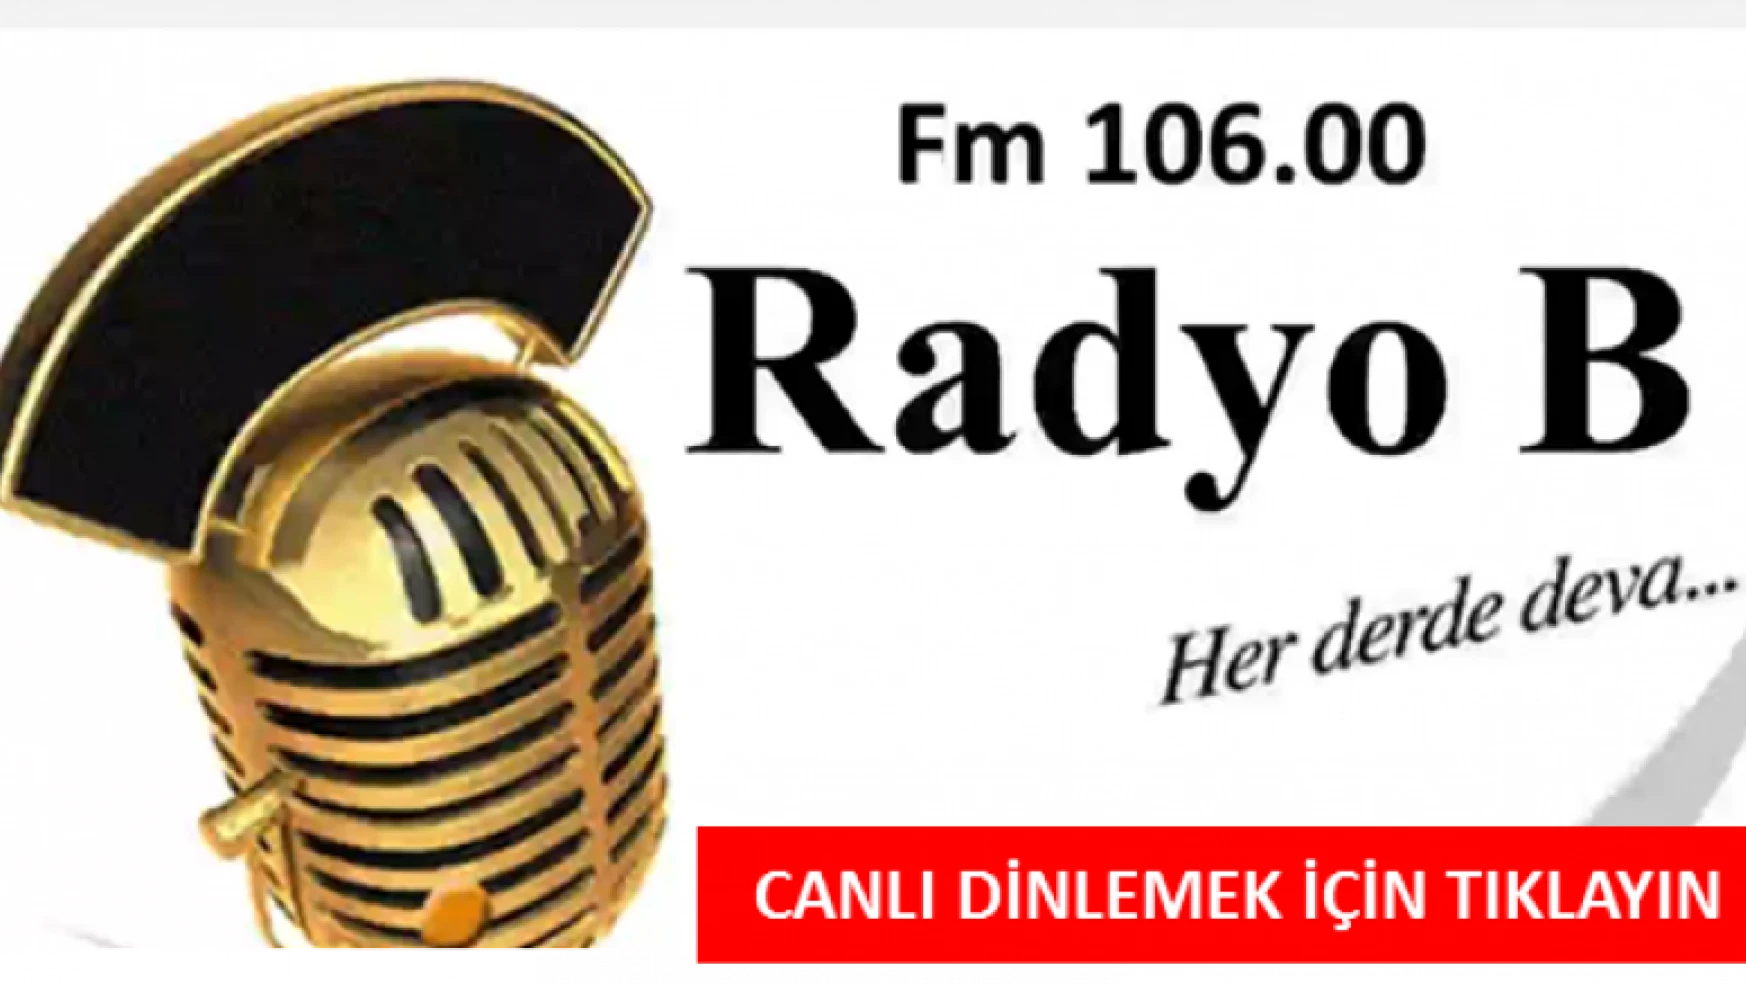 RADYO B FM 106.00 CANLI YAYINIDIR